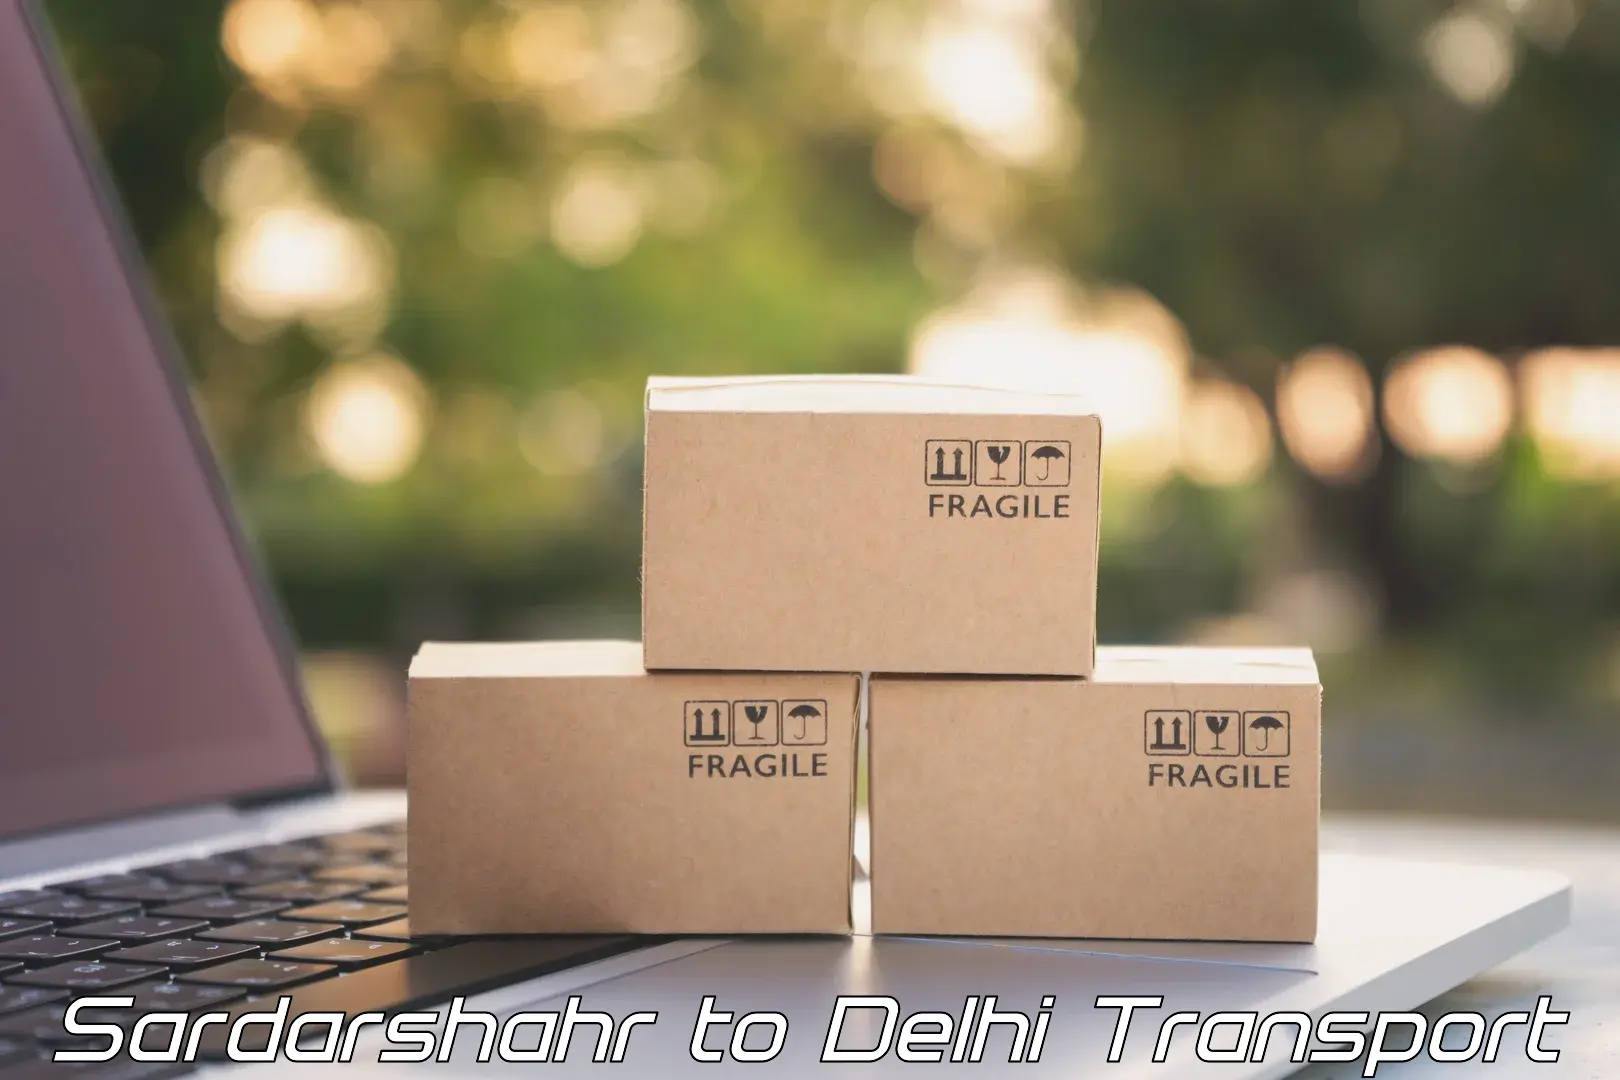 Online transport booking Sardarshahr to Delhi